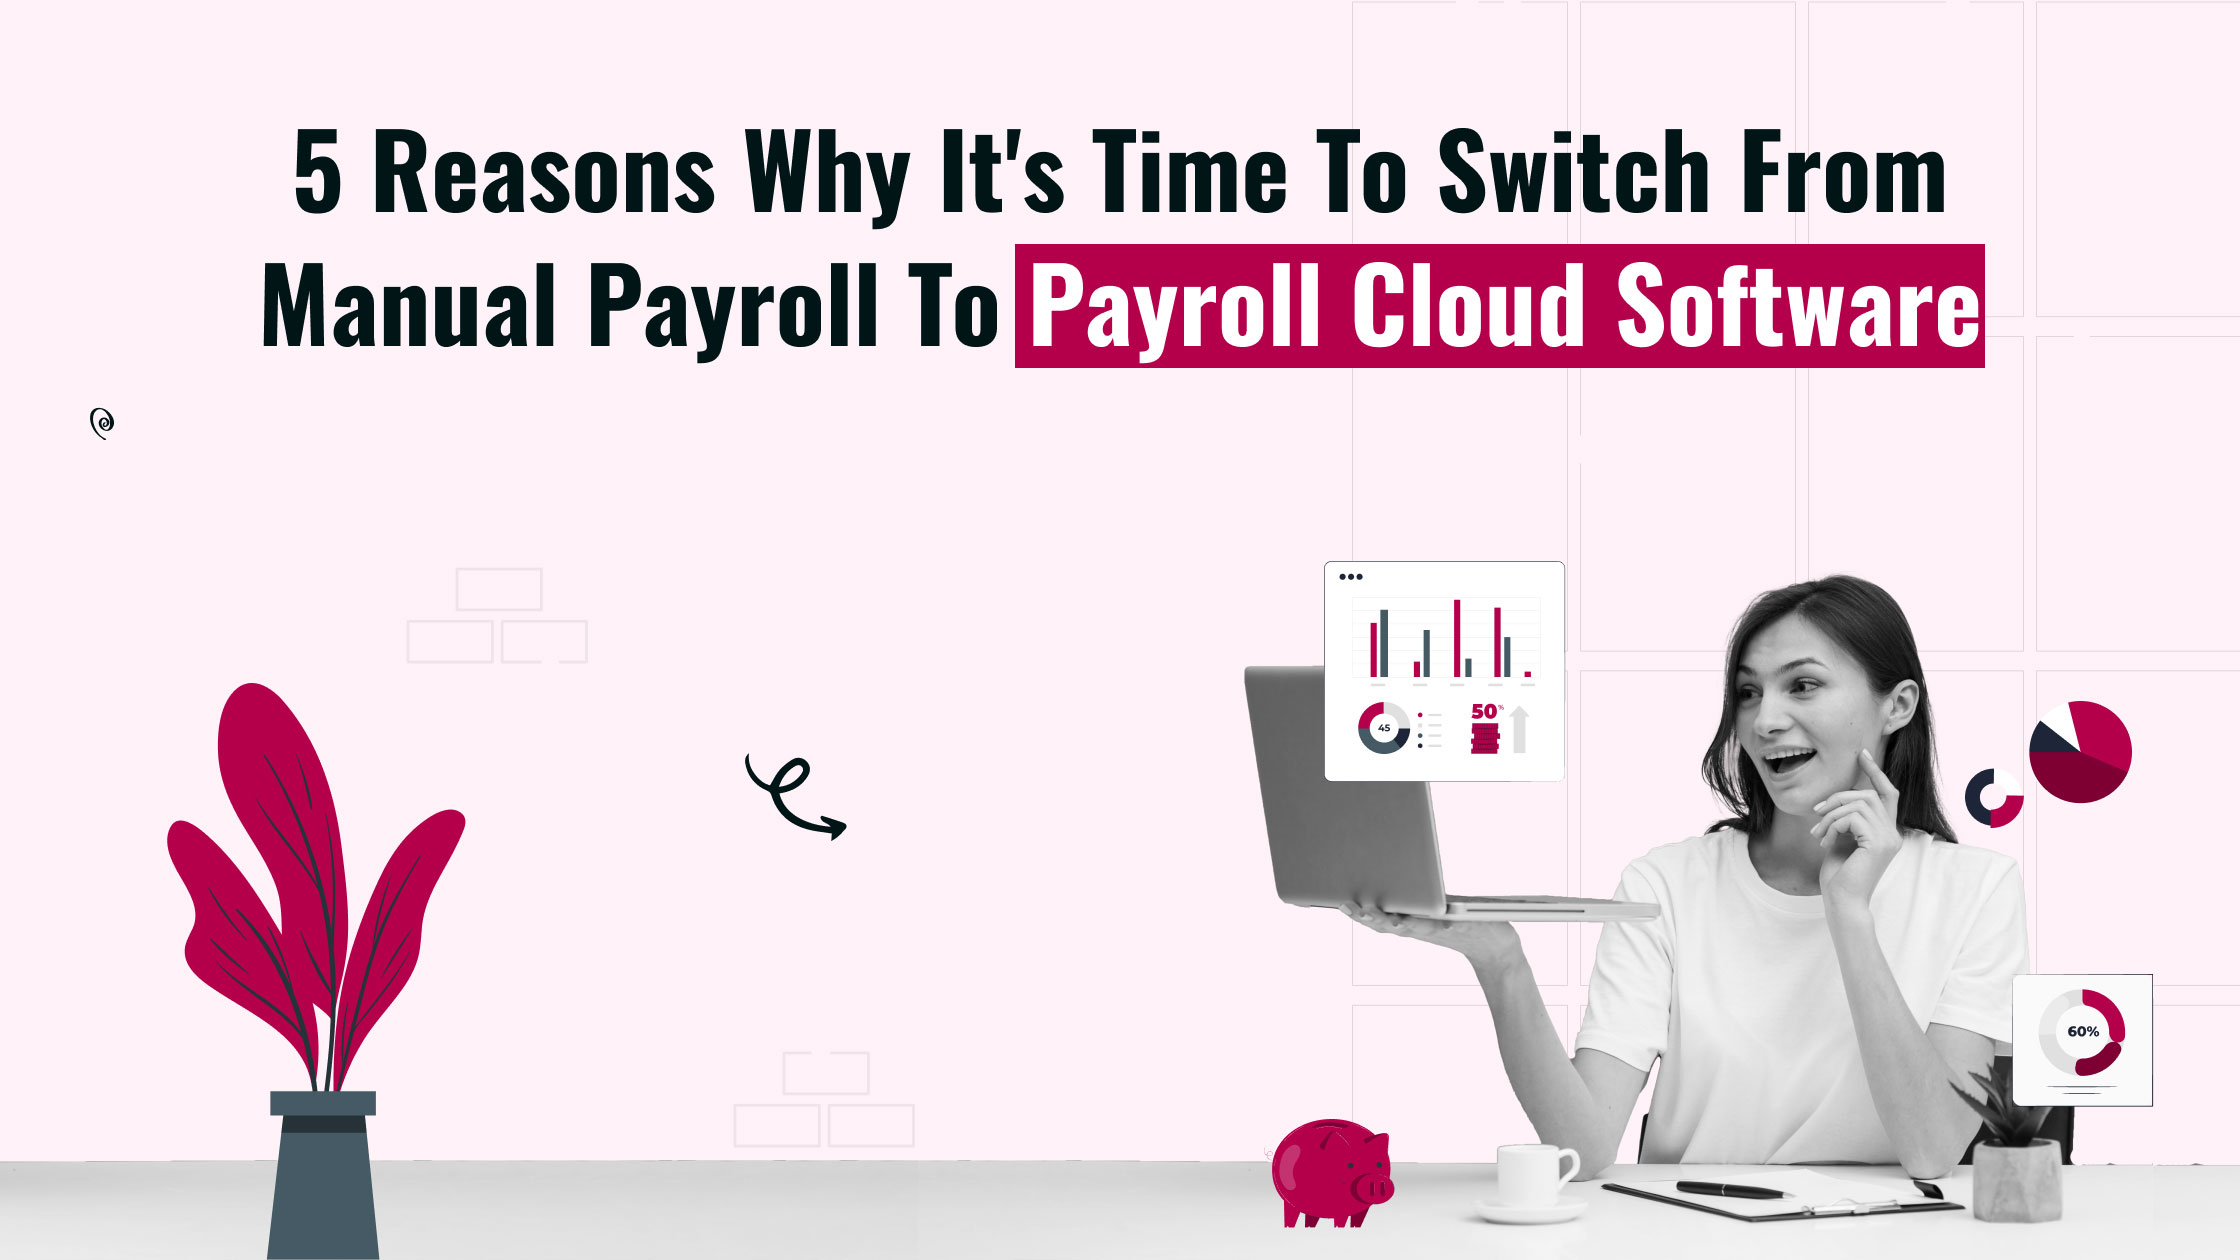 payroll cloud software